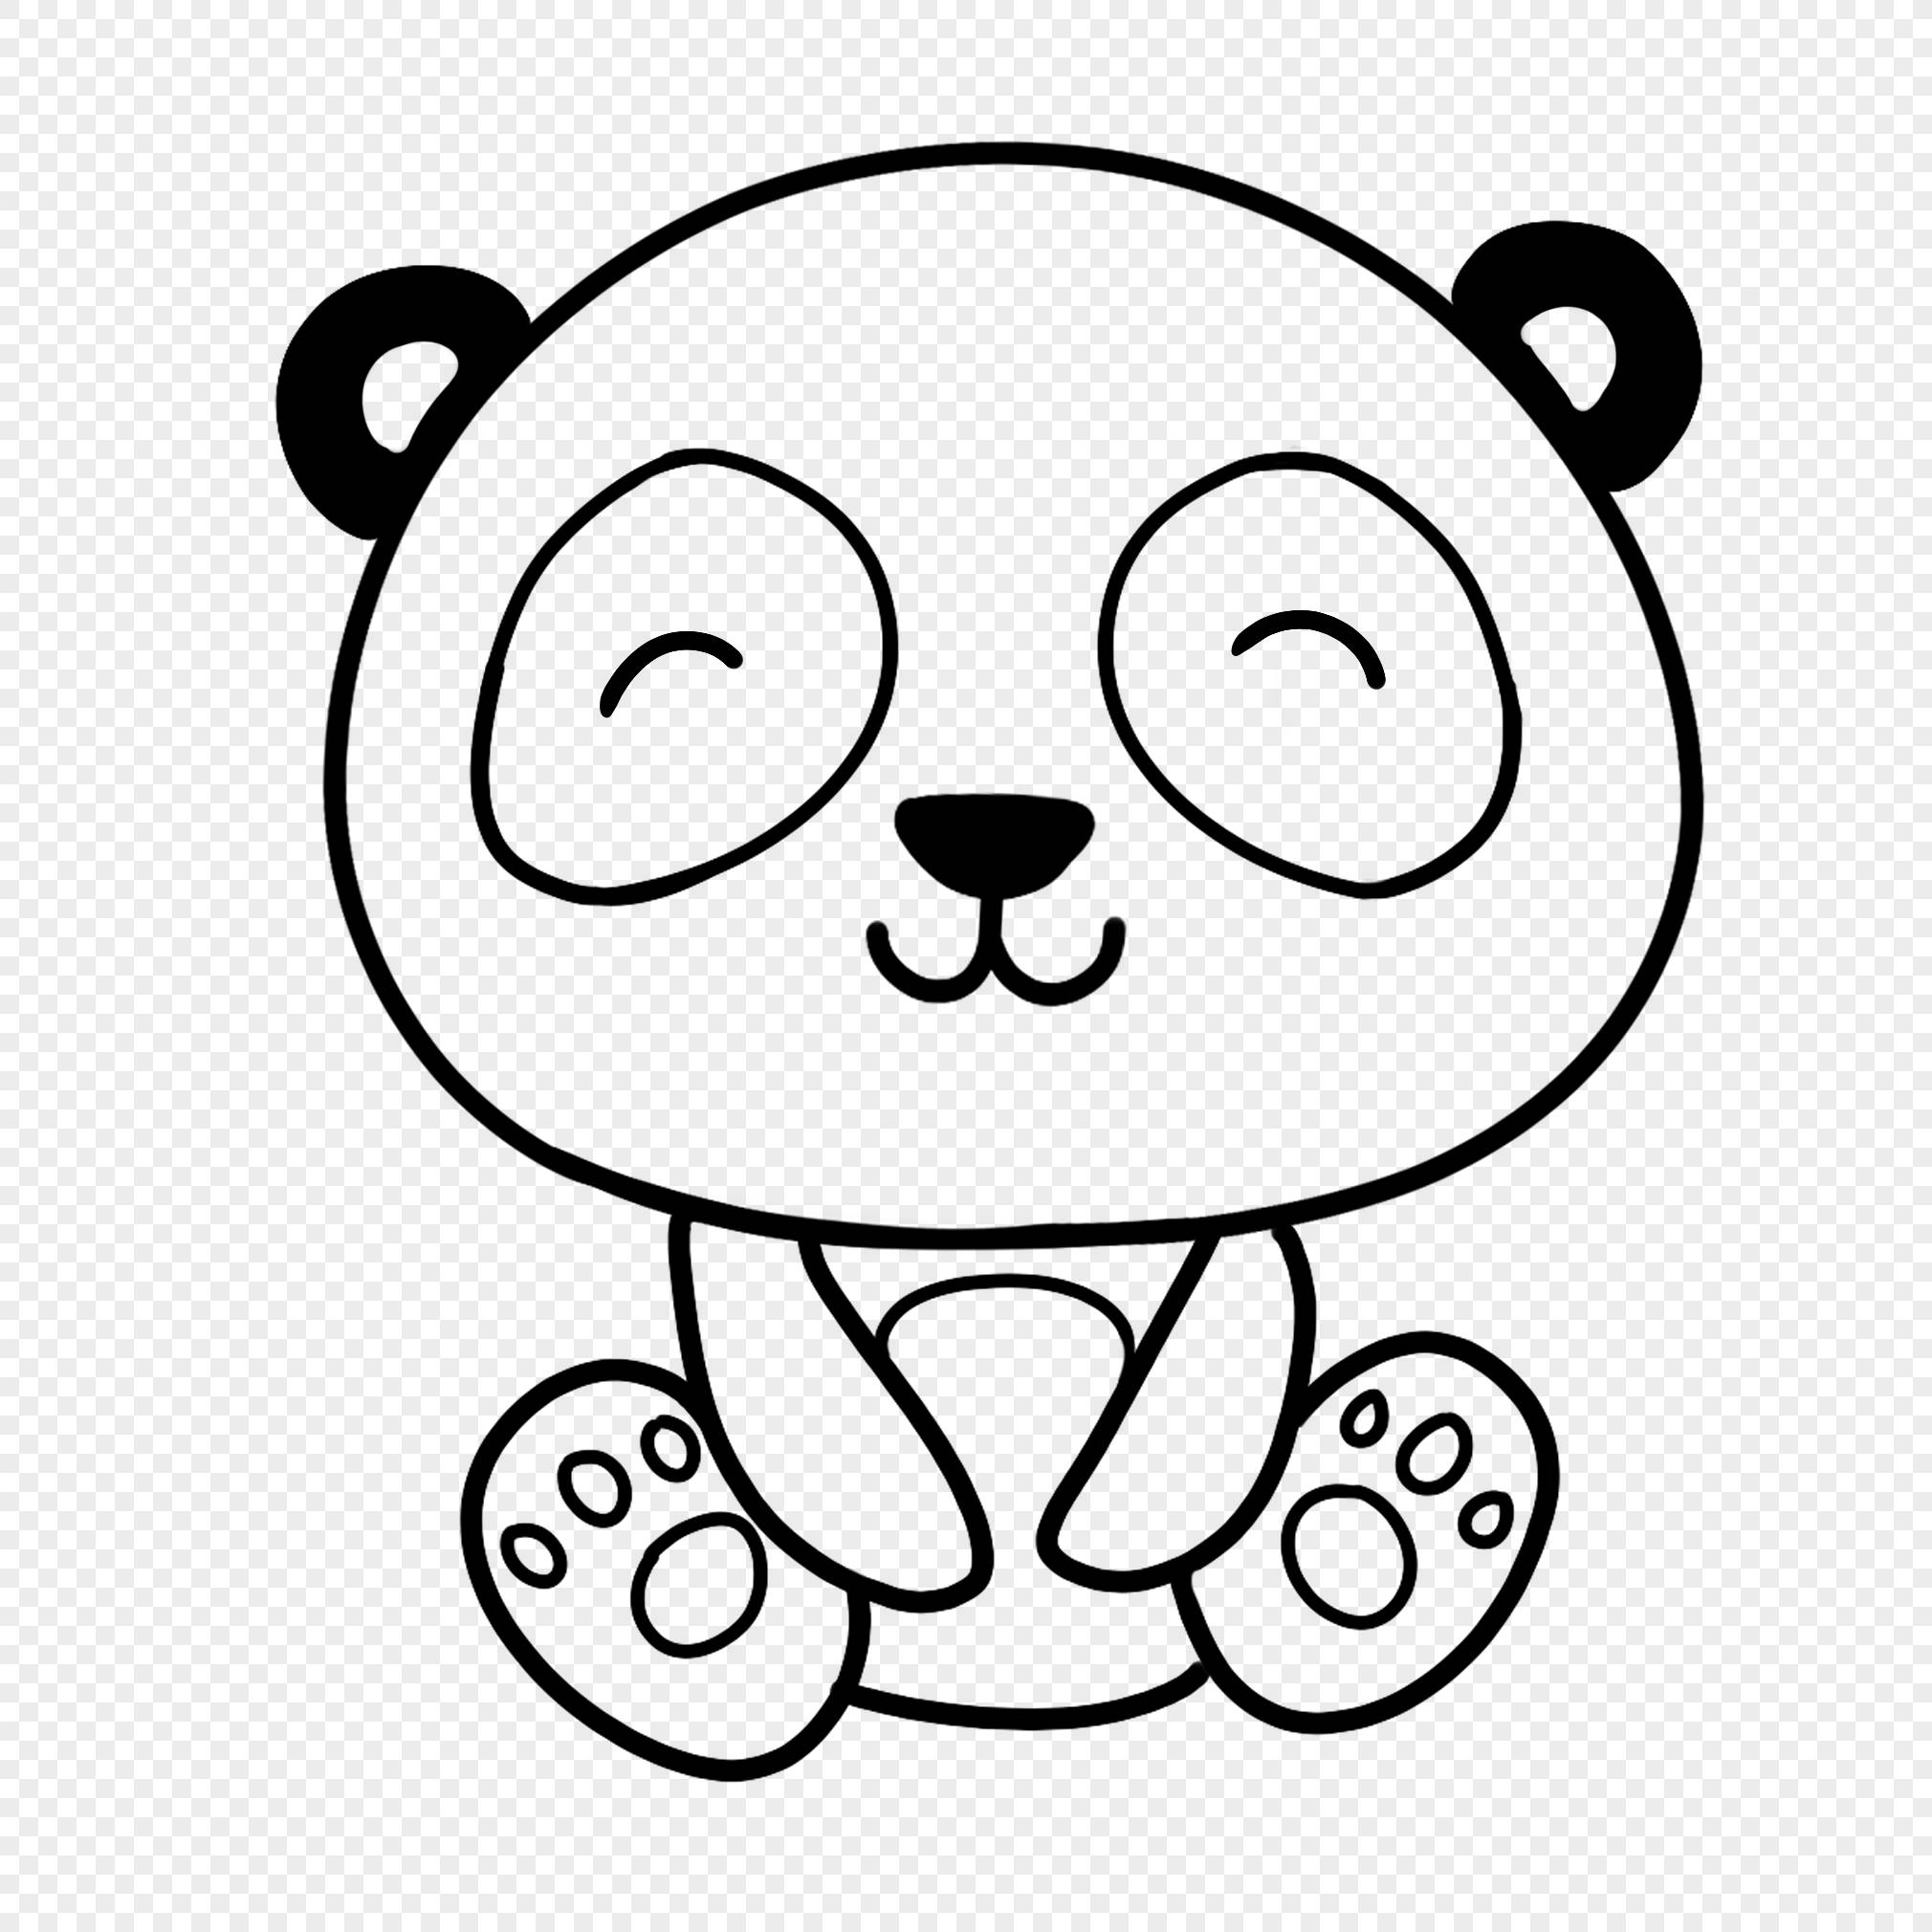 大熊猫的简笔画怎么画,大熊猫的简笔画图片大全 可爱 简单相关的内容